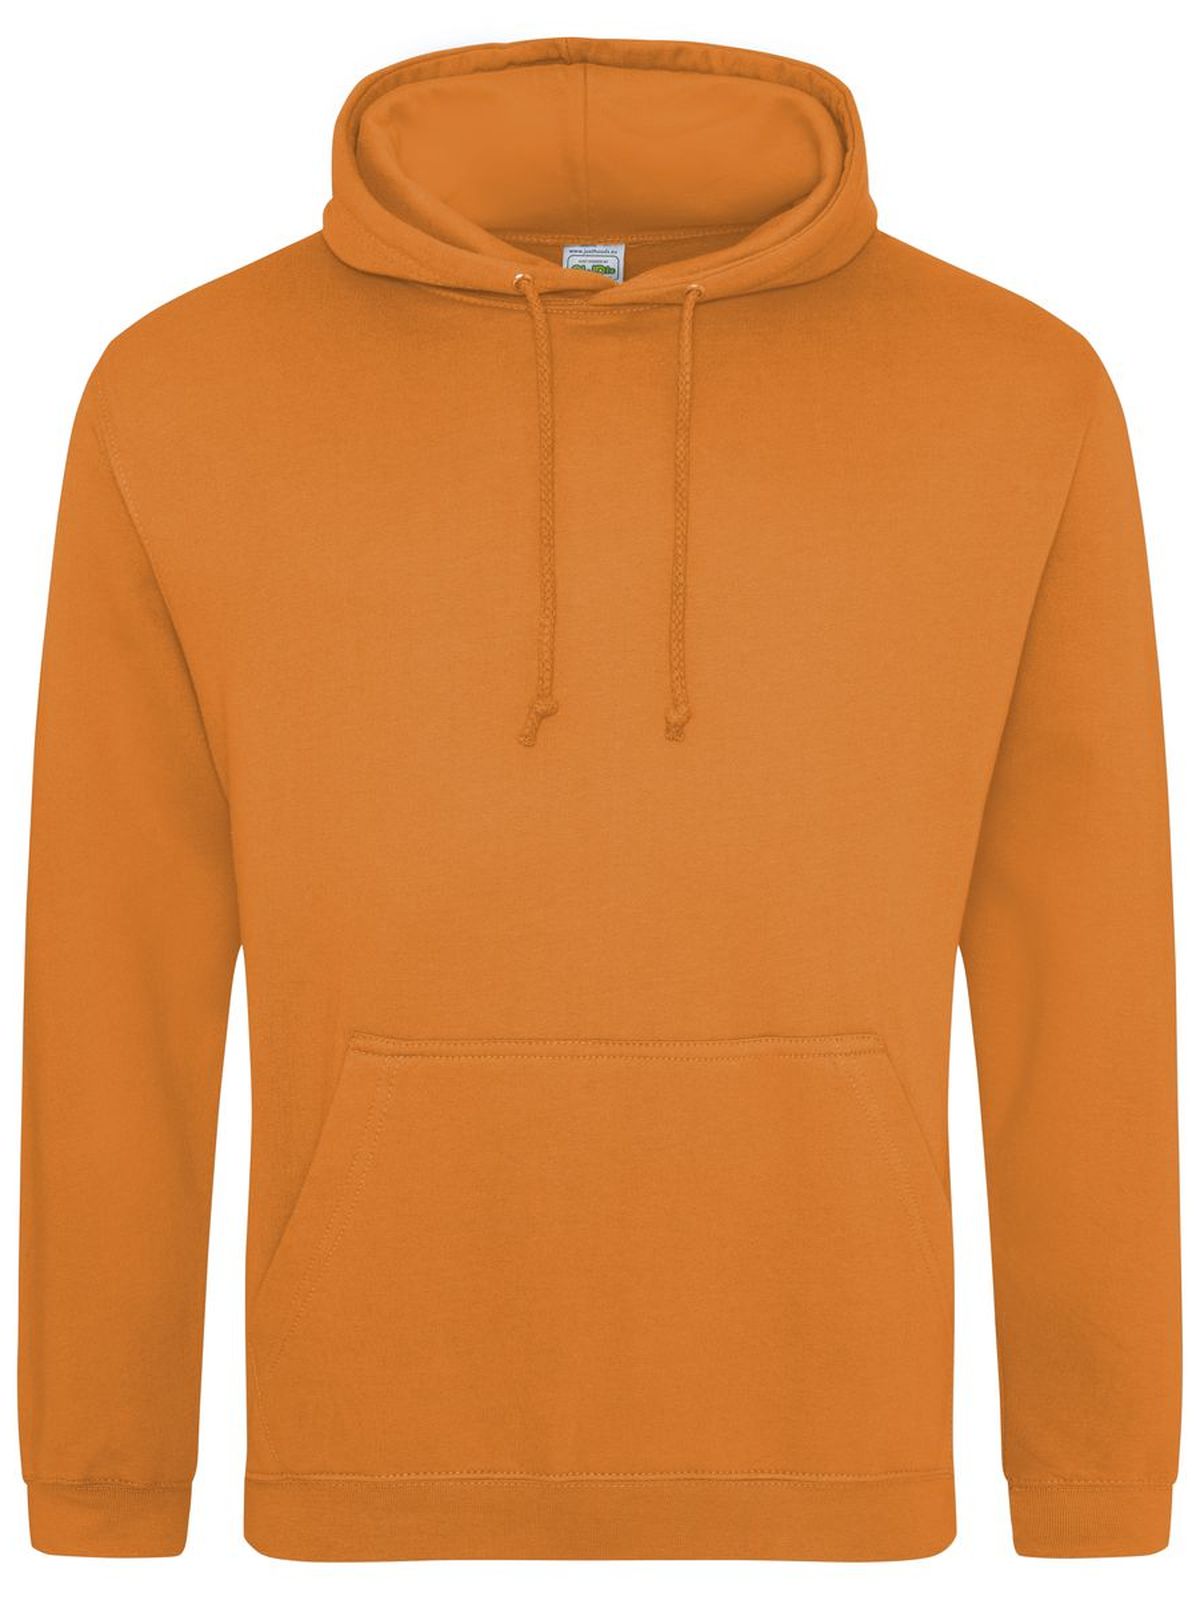 college-hoodie-orange-crush.webp